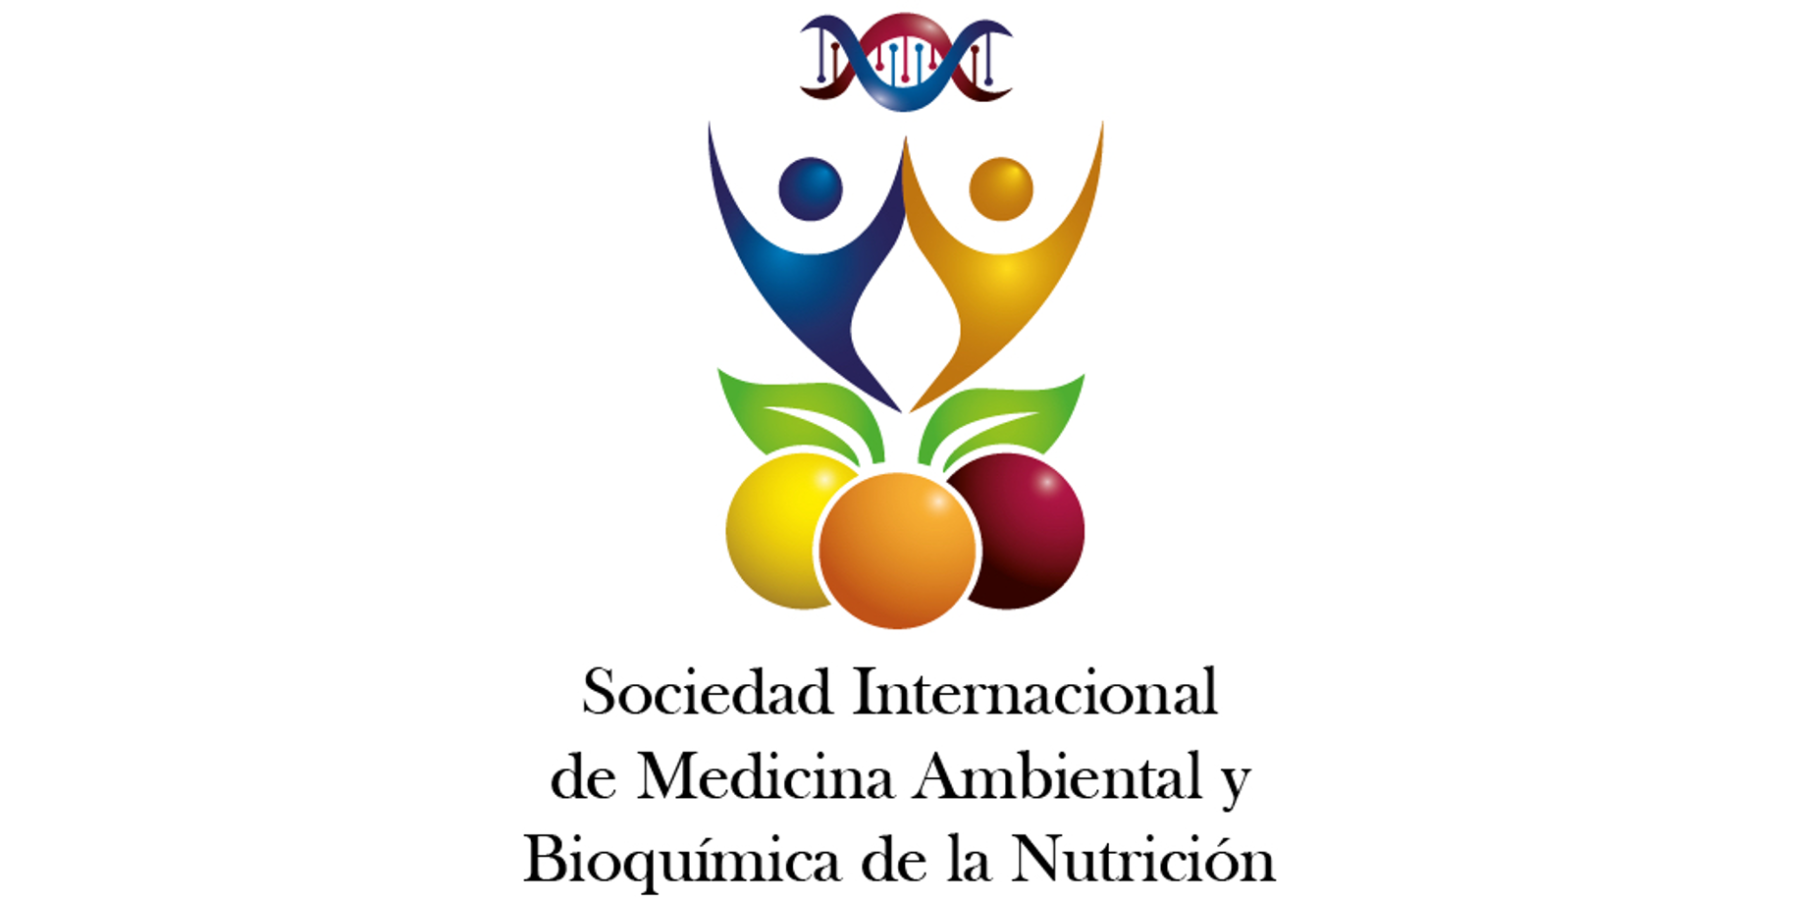 4.1 Sociedad Internacional de Medicina Ambiental